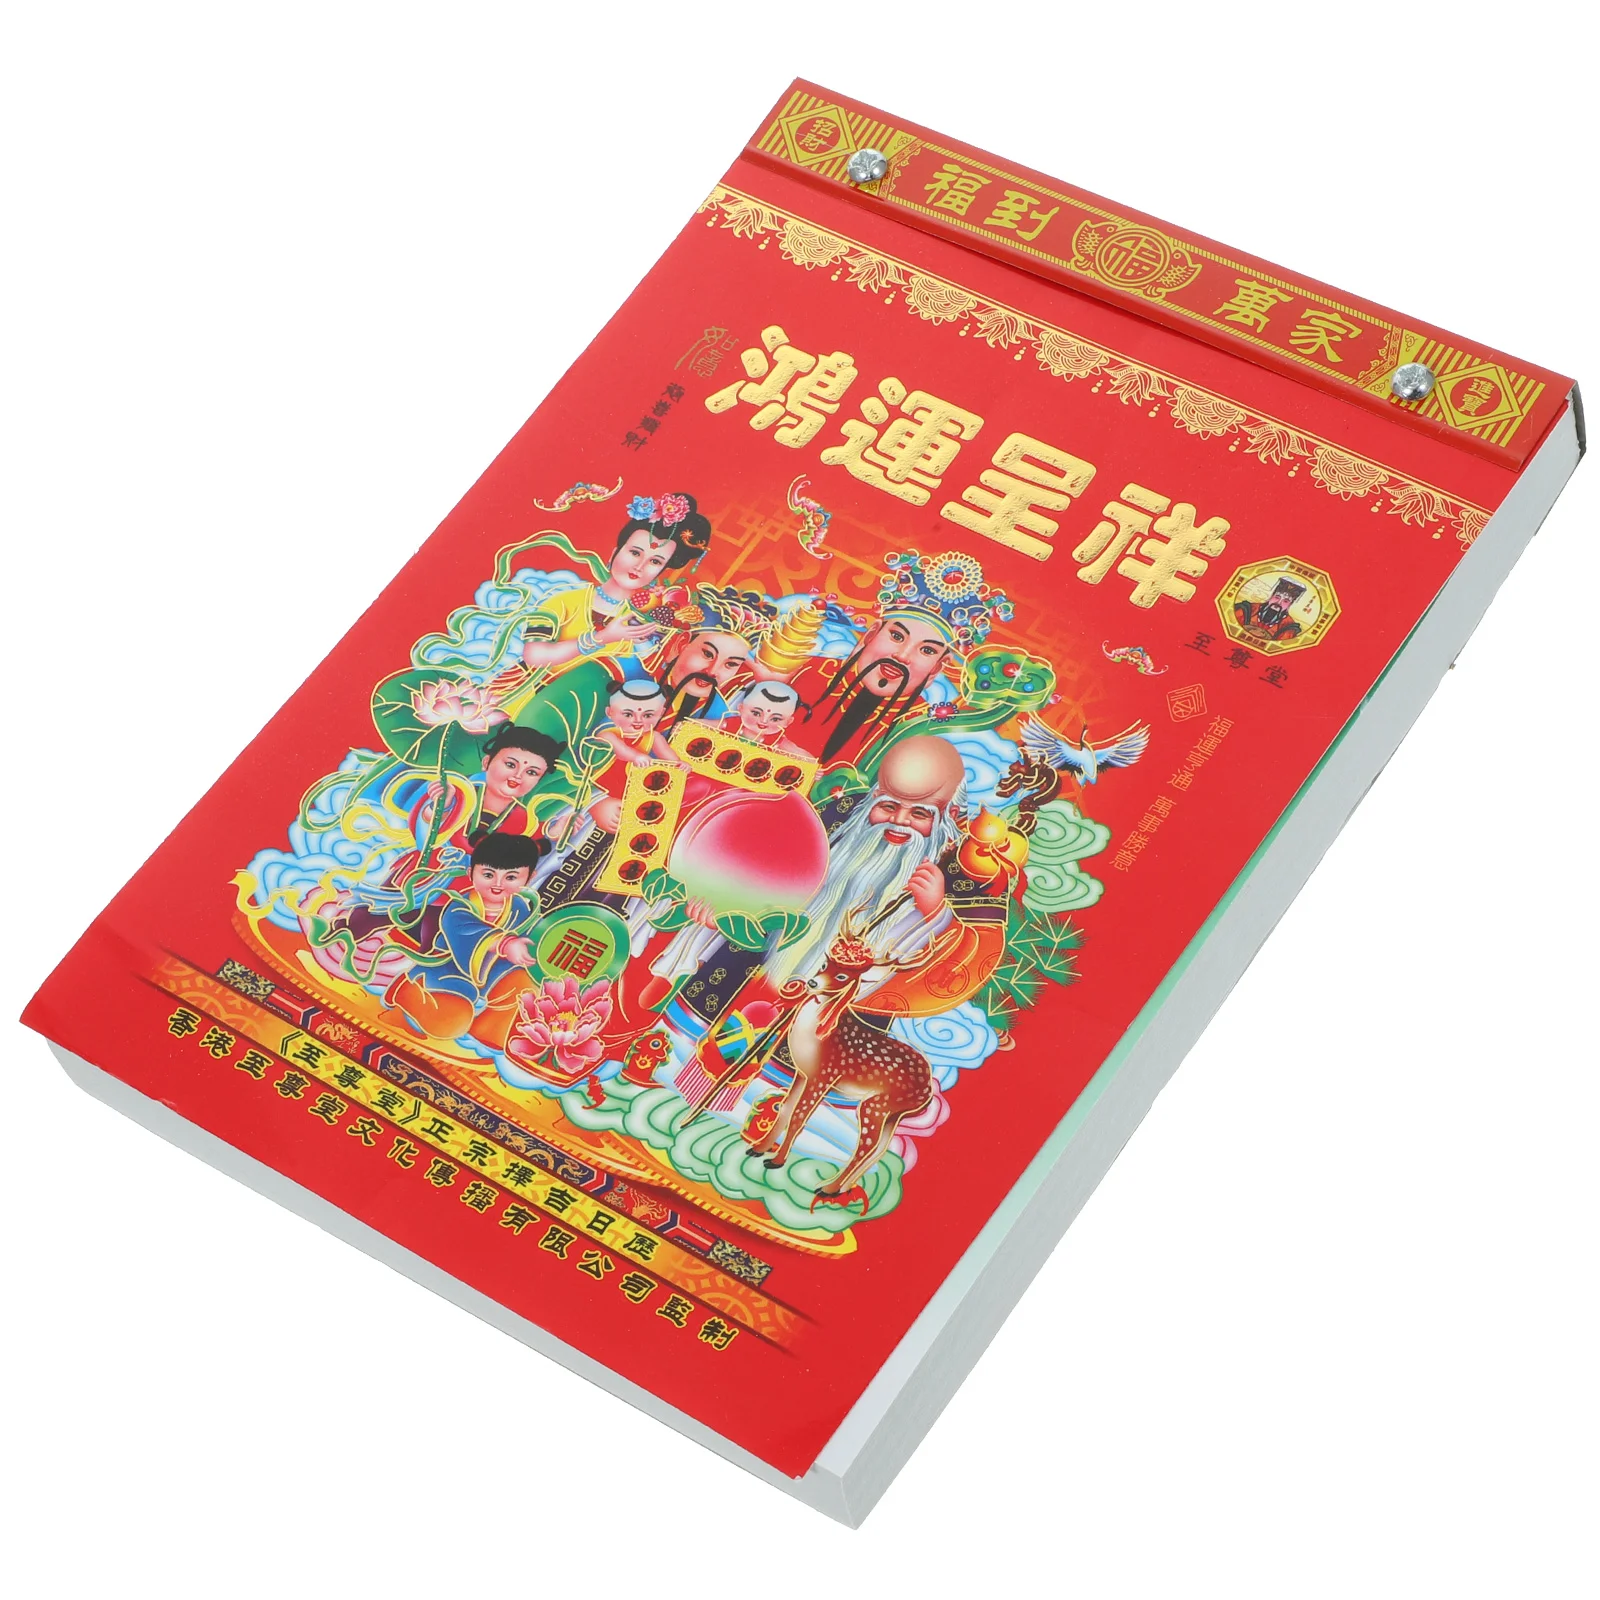 Wiszący kalendarz kalendarz ścienny wisiorek łez kalendarza księżycowego wisiorek chiński kalendarz wystrój okładki jest losowy